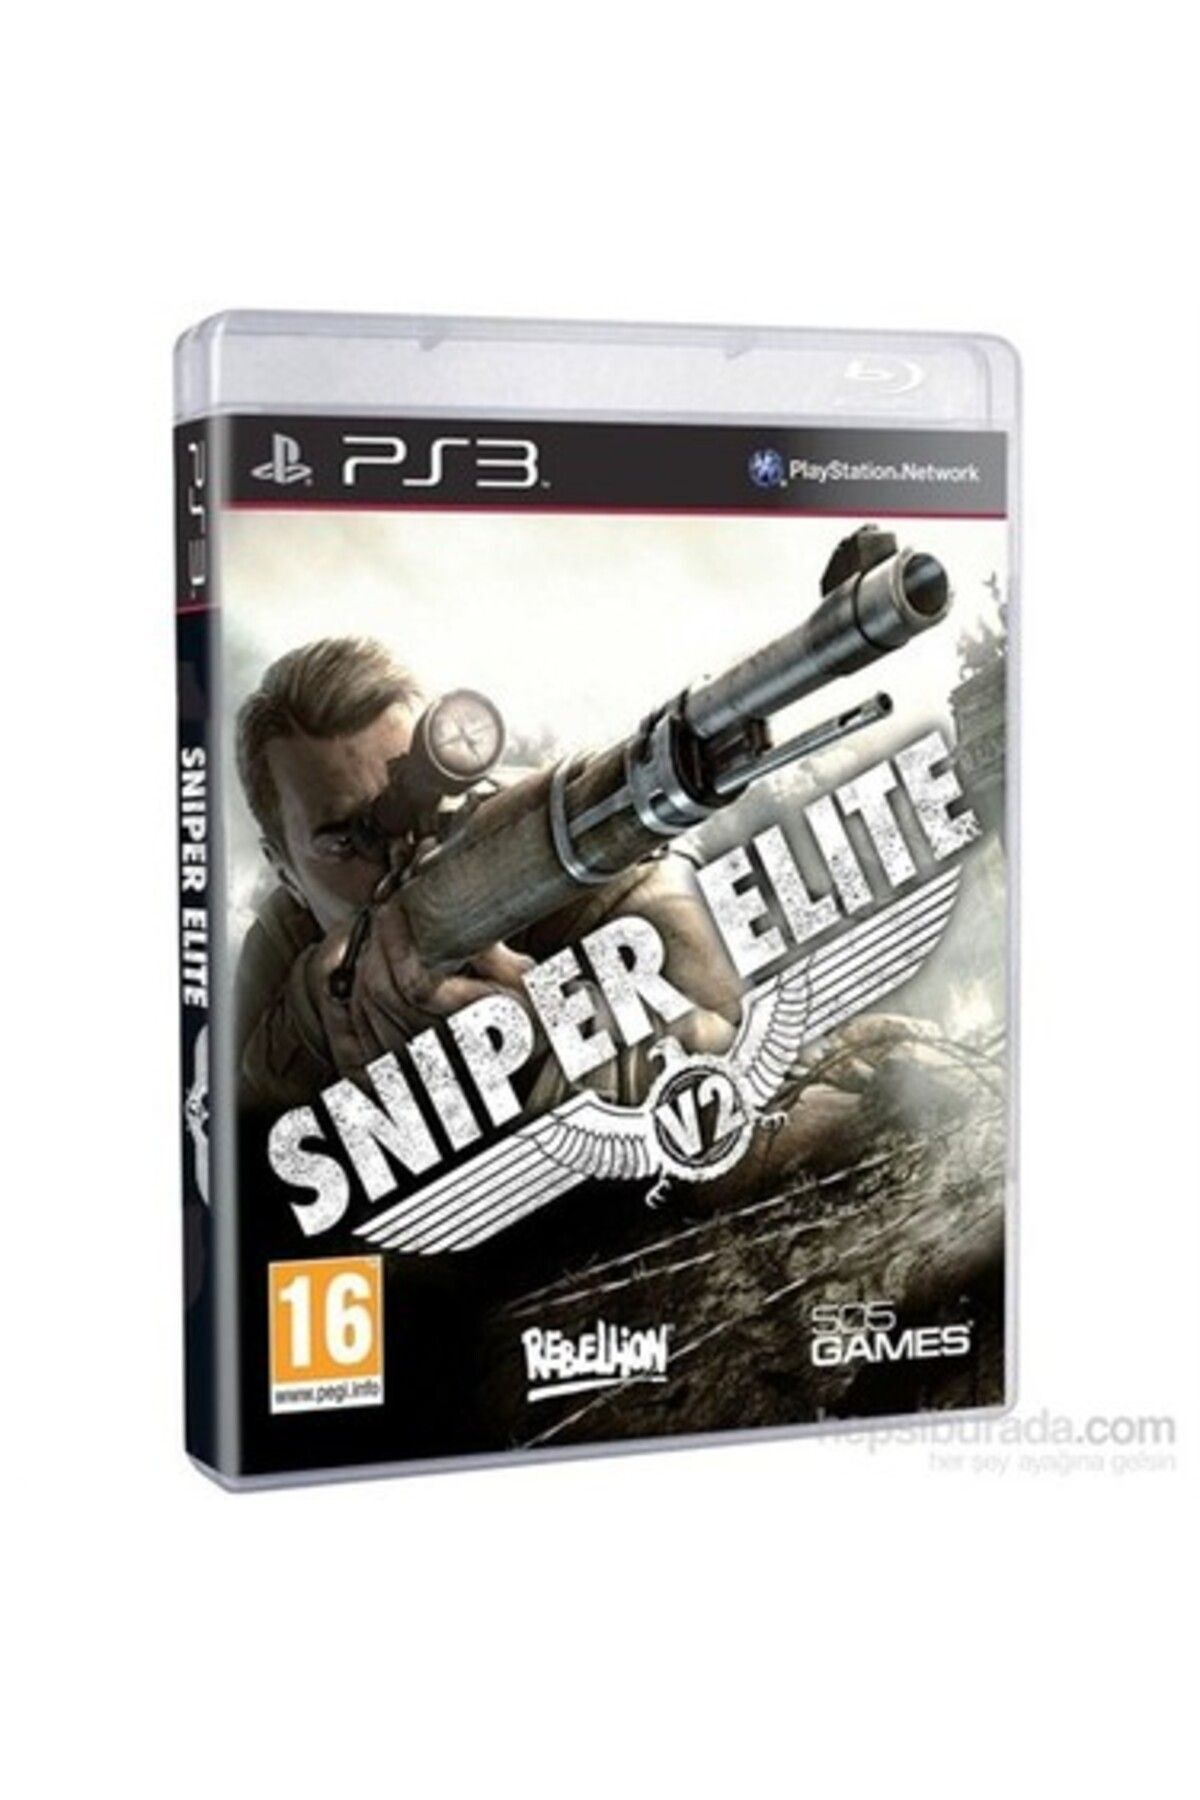 505Games Ps3 Sniper Elite V2